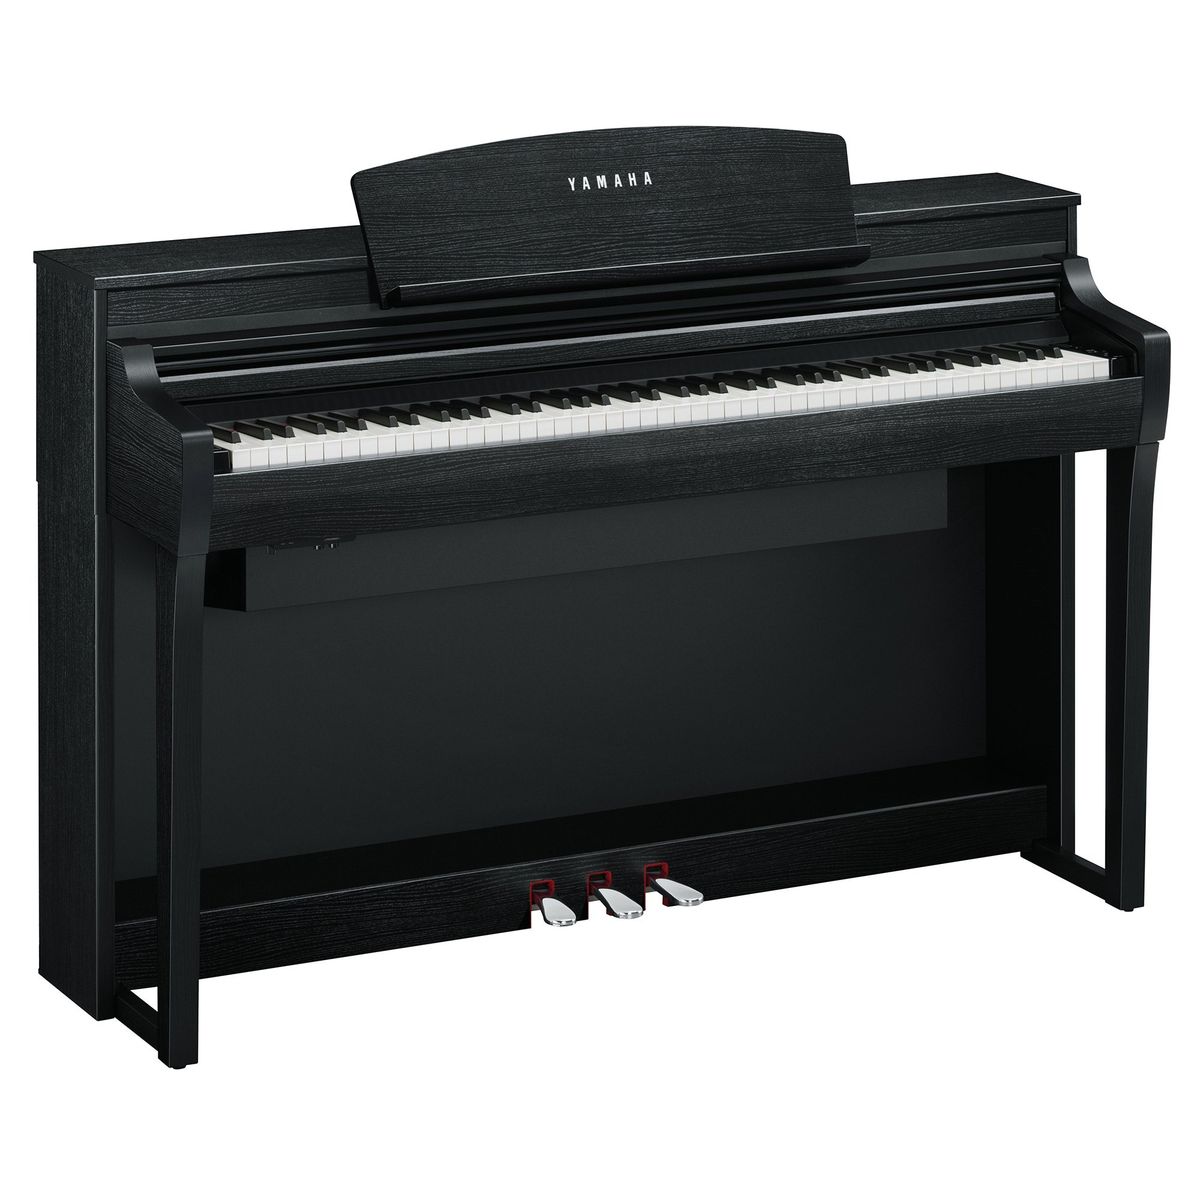 Цифровые пианино Yamaha CSP-275B гринберг наследие марии гринберг том 5 рахманинов концерт 3 для фортепиано с оркестро